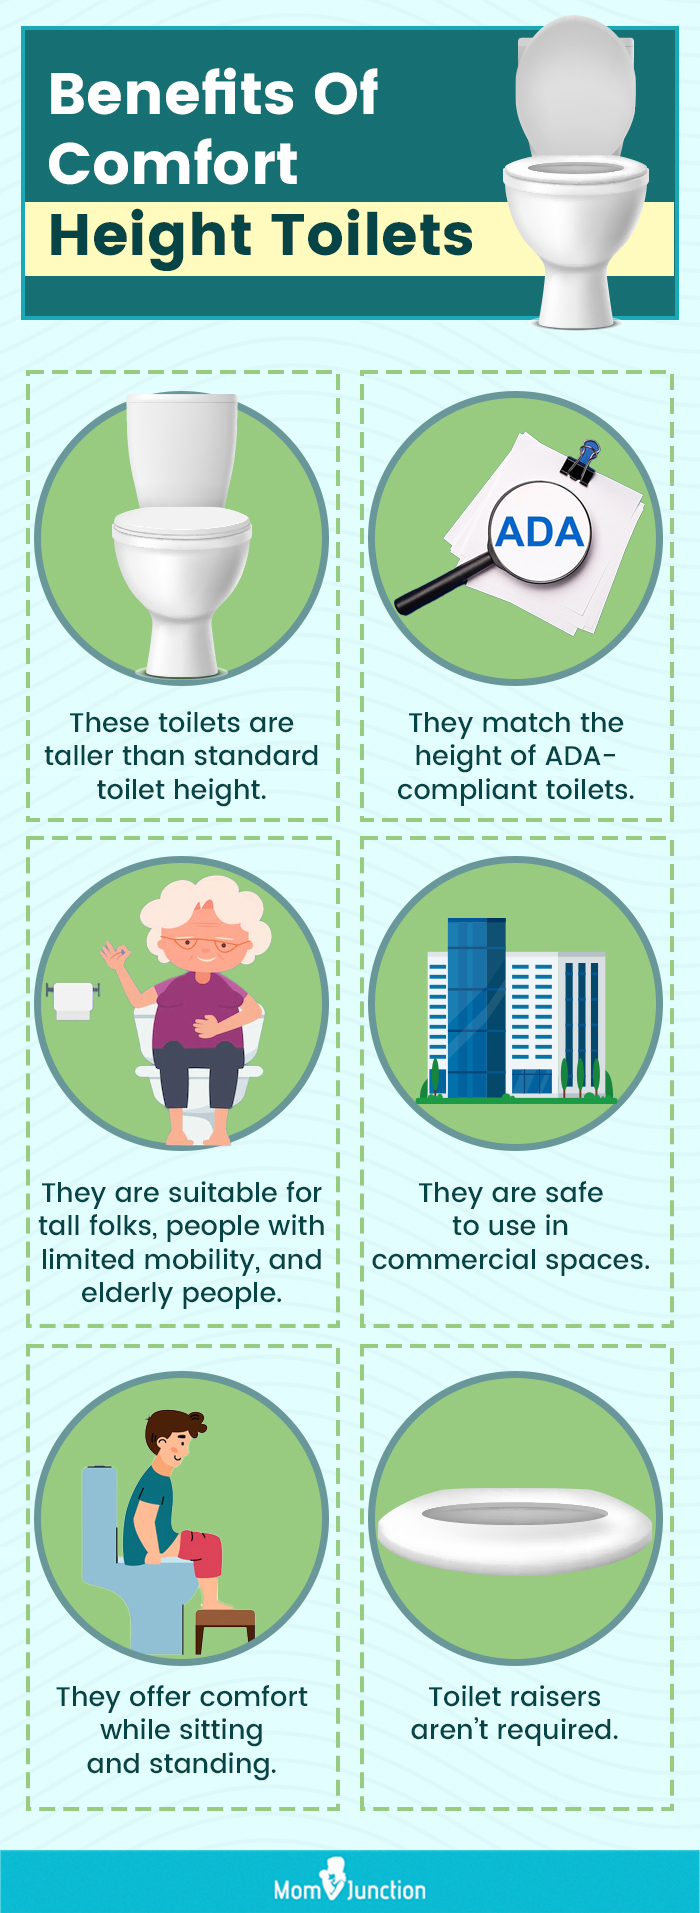 Benefits Of Comfort Height Toilets